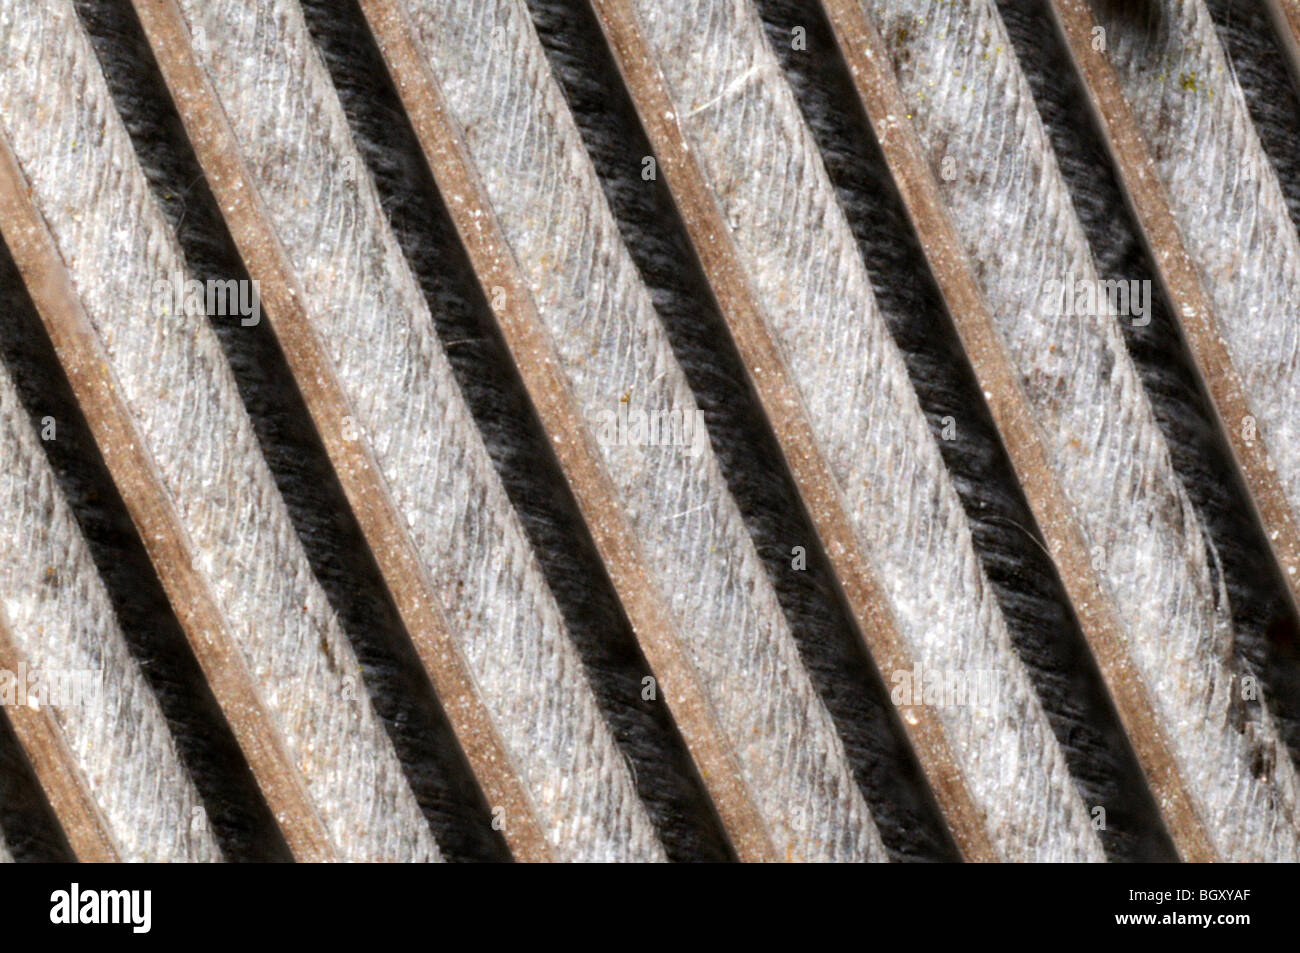 Imagen microscópica de los dibujos hechos por una pluma de paloma Foto de stock